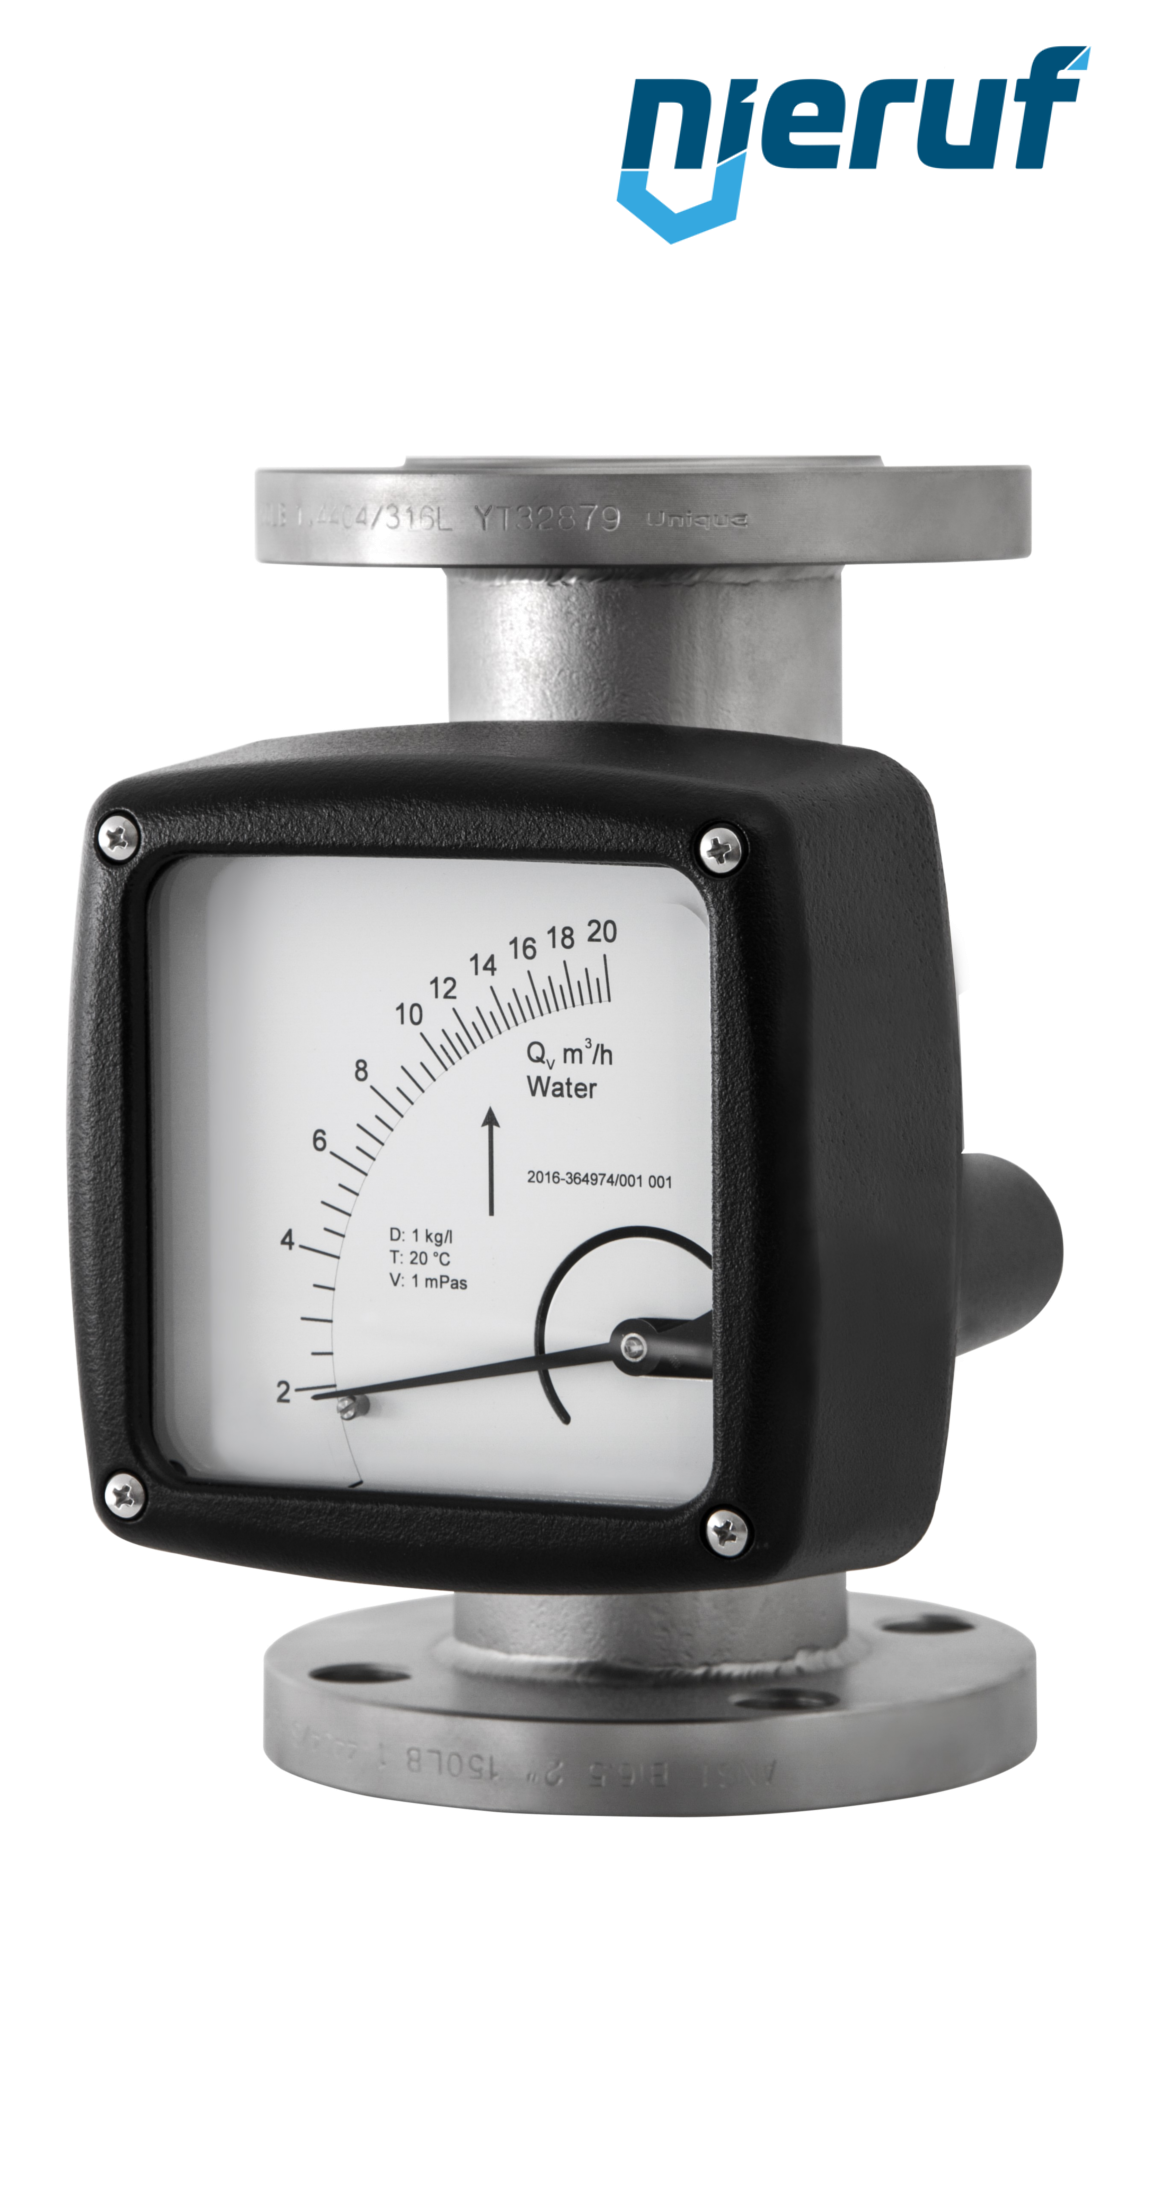 misuratore di portata / flussometro flangiato DN25-attacco 1,7 - 17,0 m3/h tubo DN15 aria